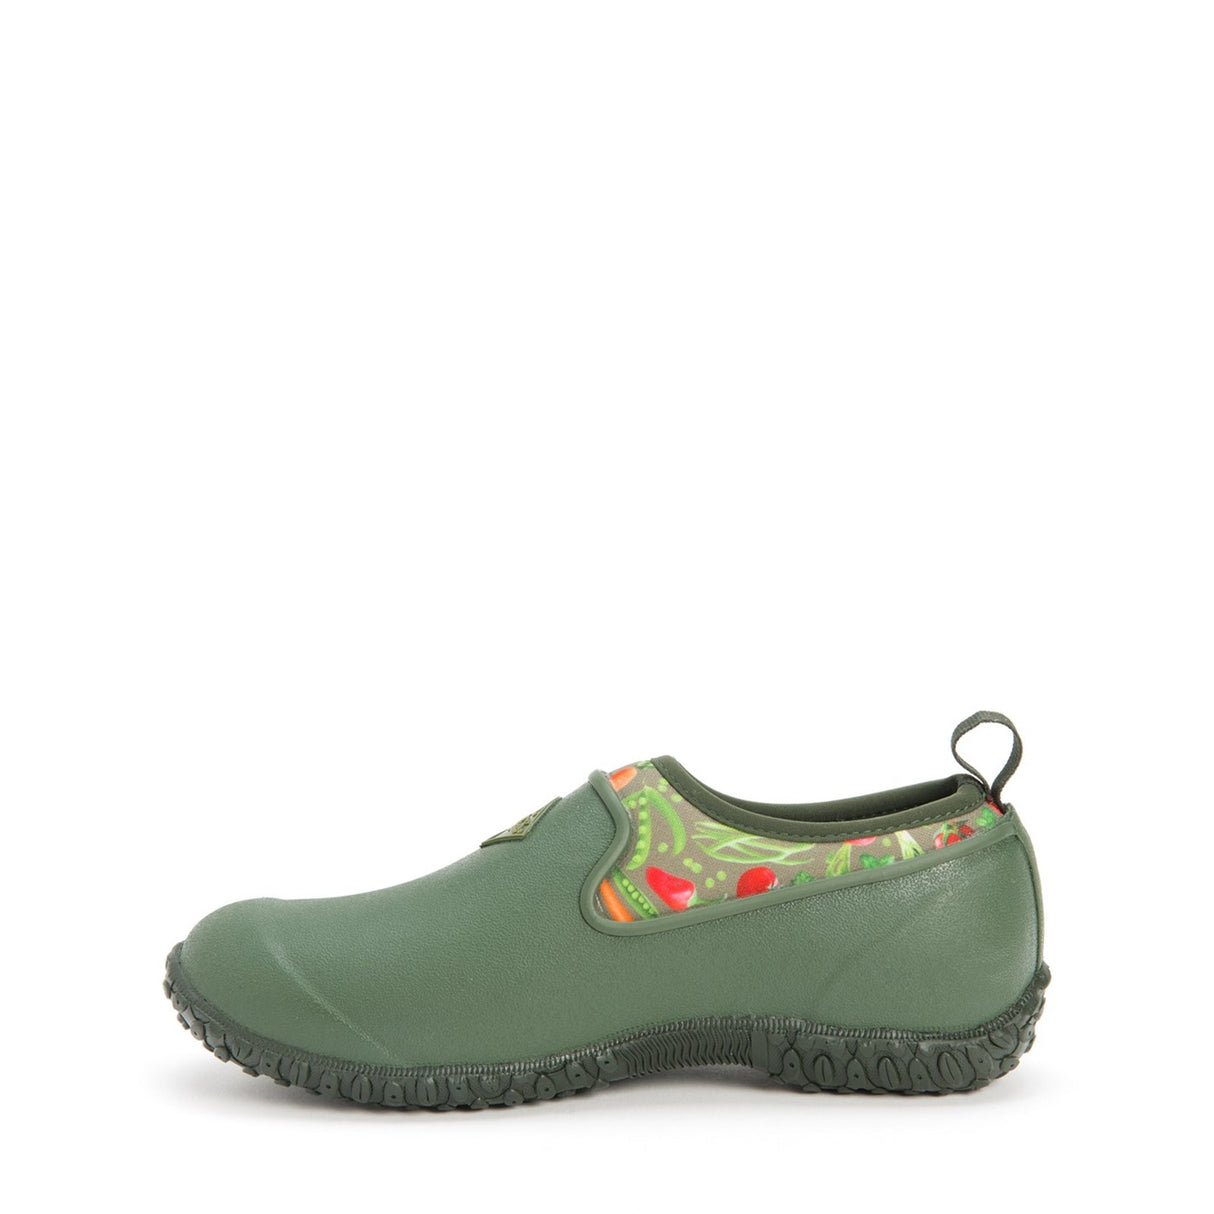 Women's RHS Muckster II Shoes Green Veggie Print